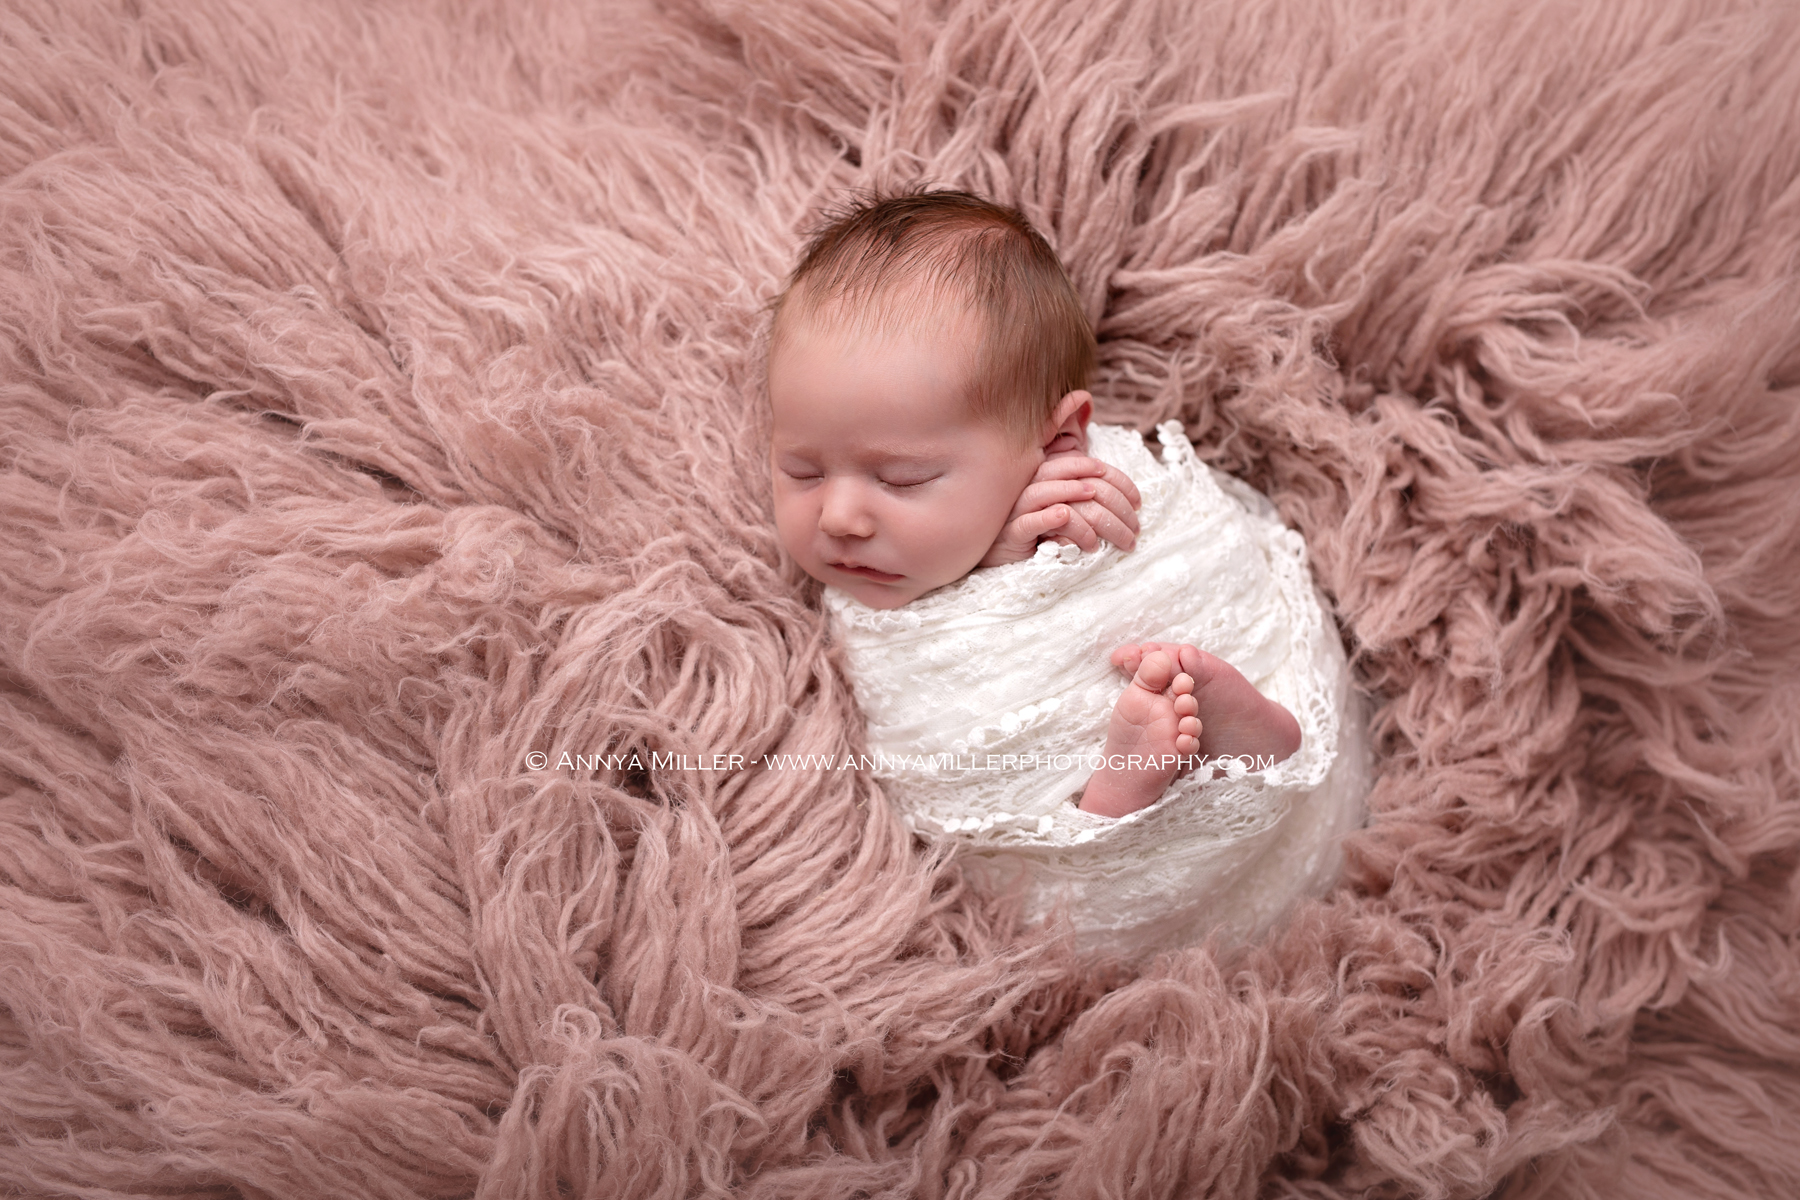 Pickering newborn photos of newborn baby girl